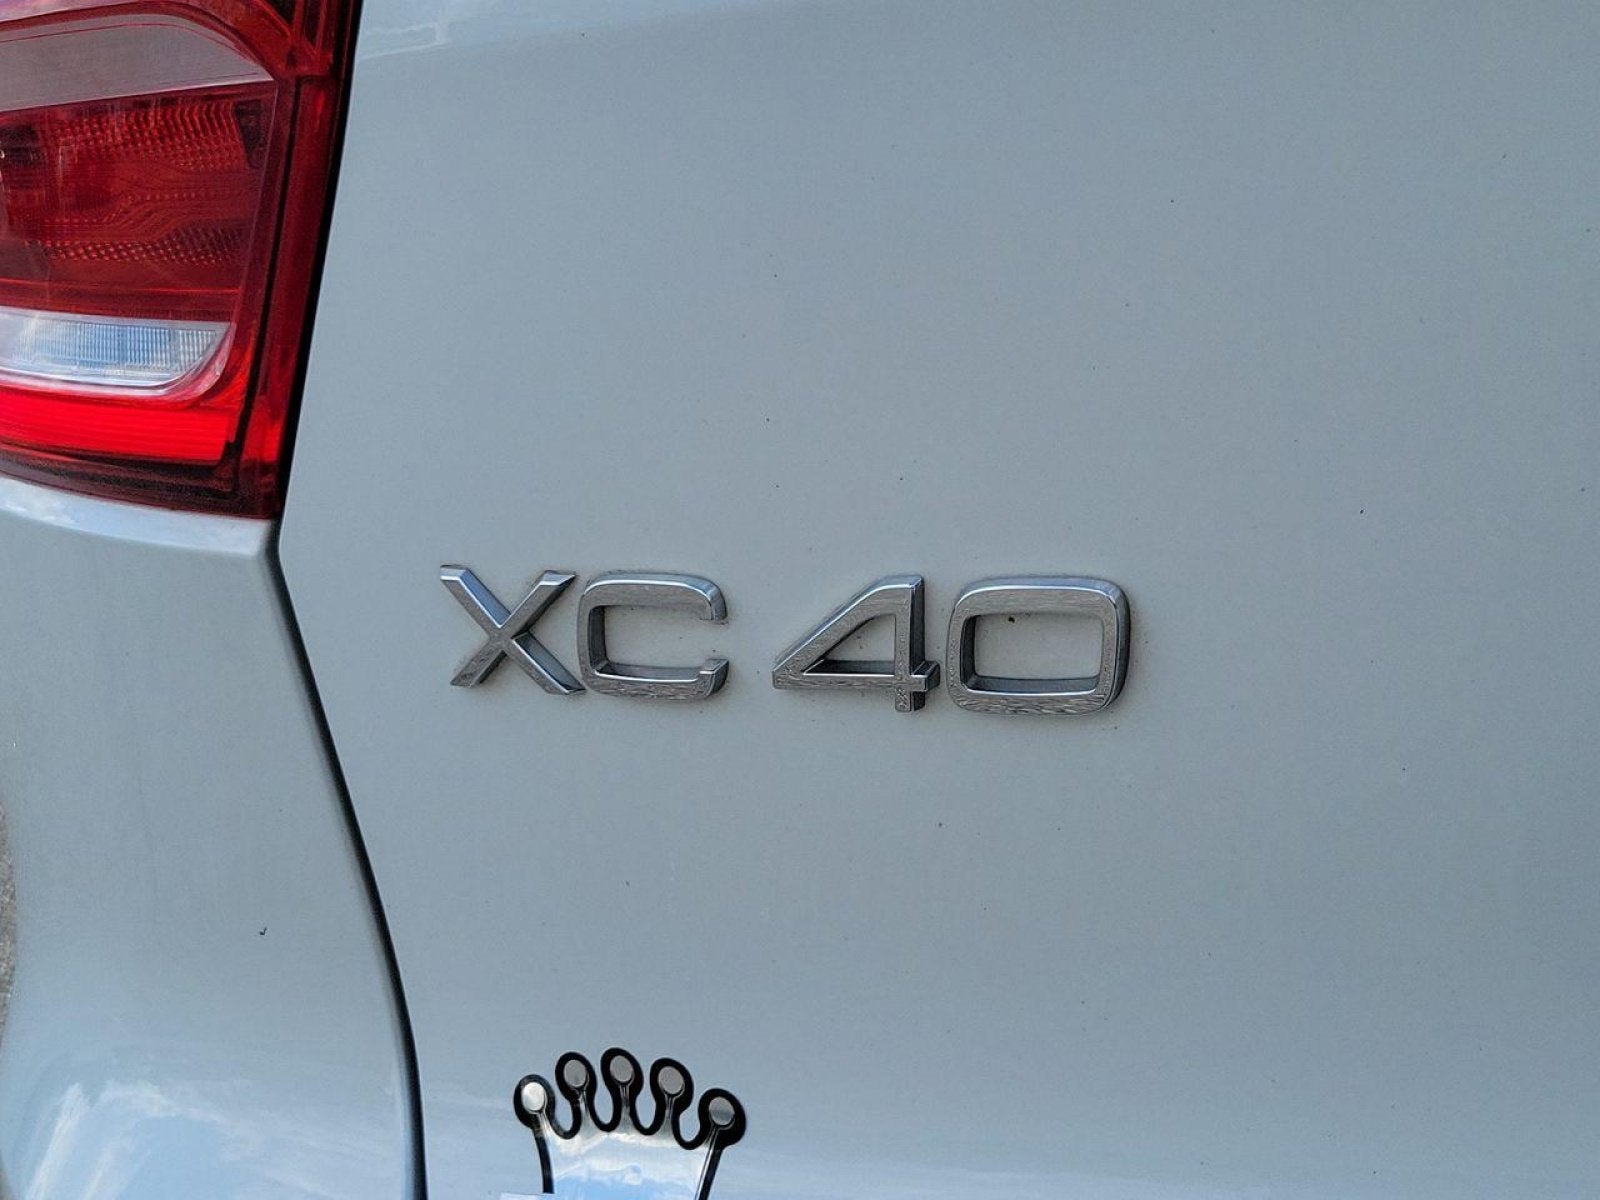 2021 Volvo XC40 R-Design